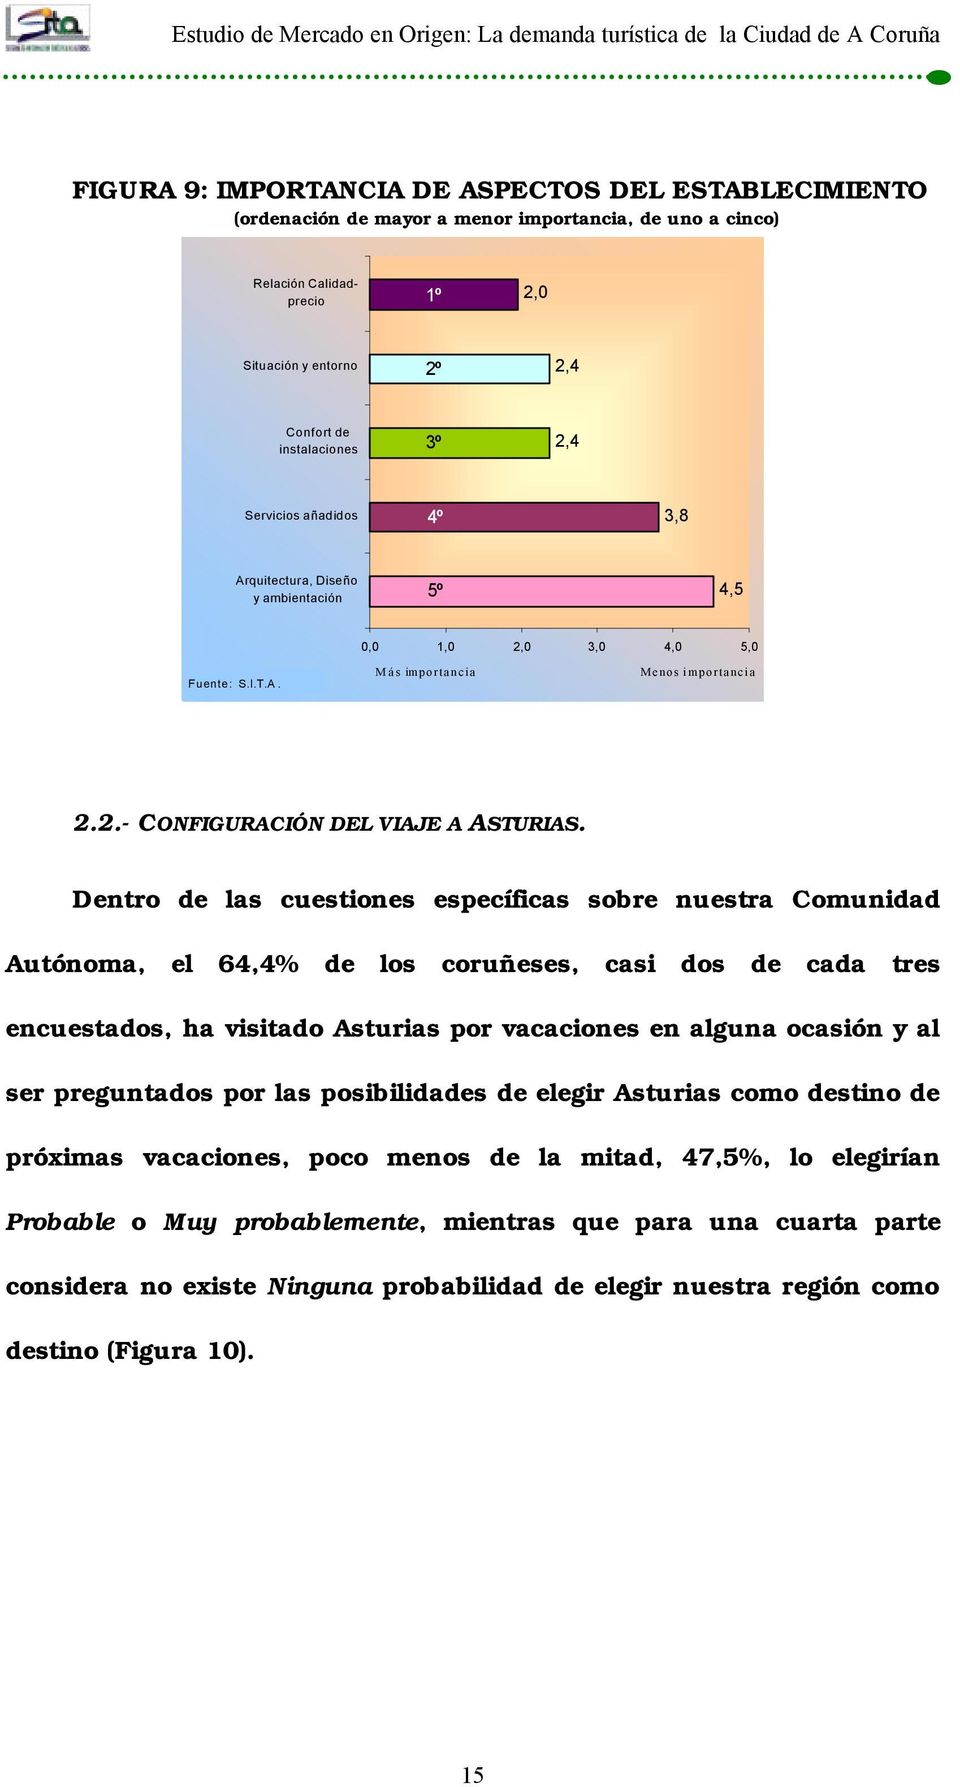 Dentro de las cuestiones específicas sobre nuestra Comunidad Autónoma, el 64,4% de los coruñeses, casi dos de cada tres encuestados, ha visitado Asturias por vacaciones en alguna ocasión y al ser